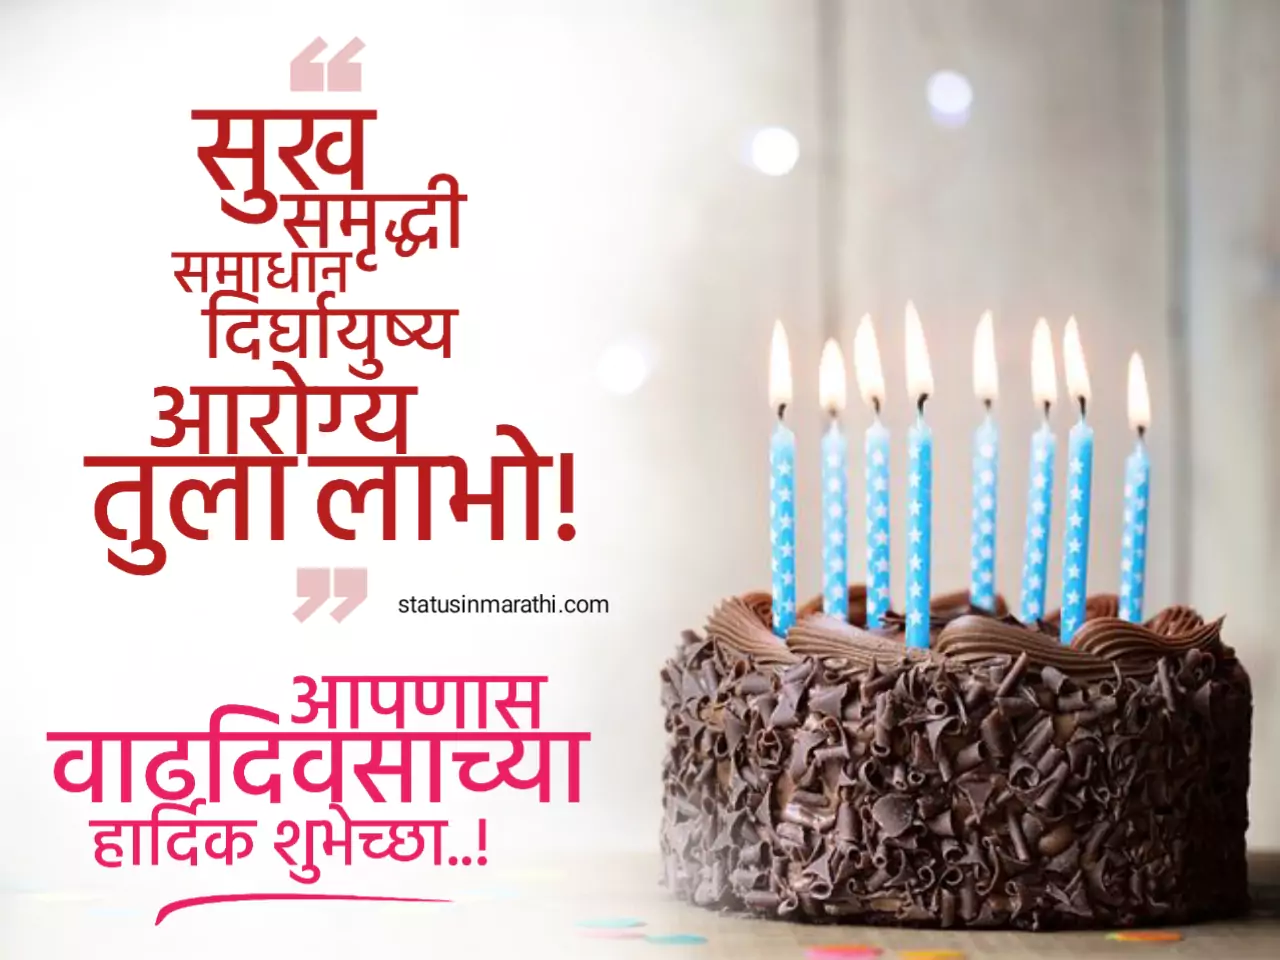 Happy birthday wishes in marathi